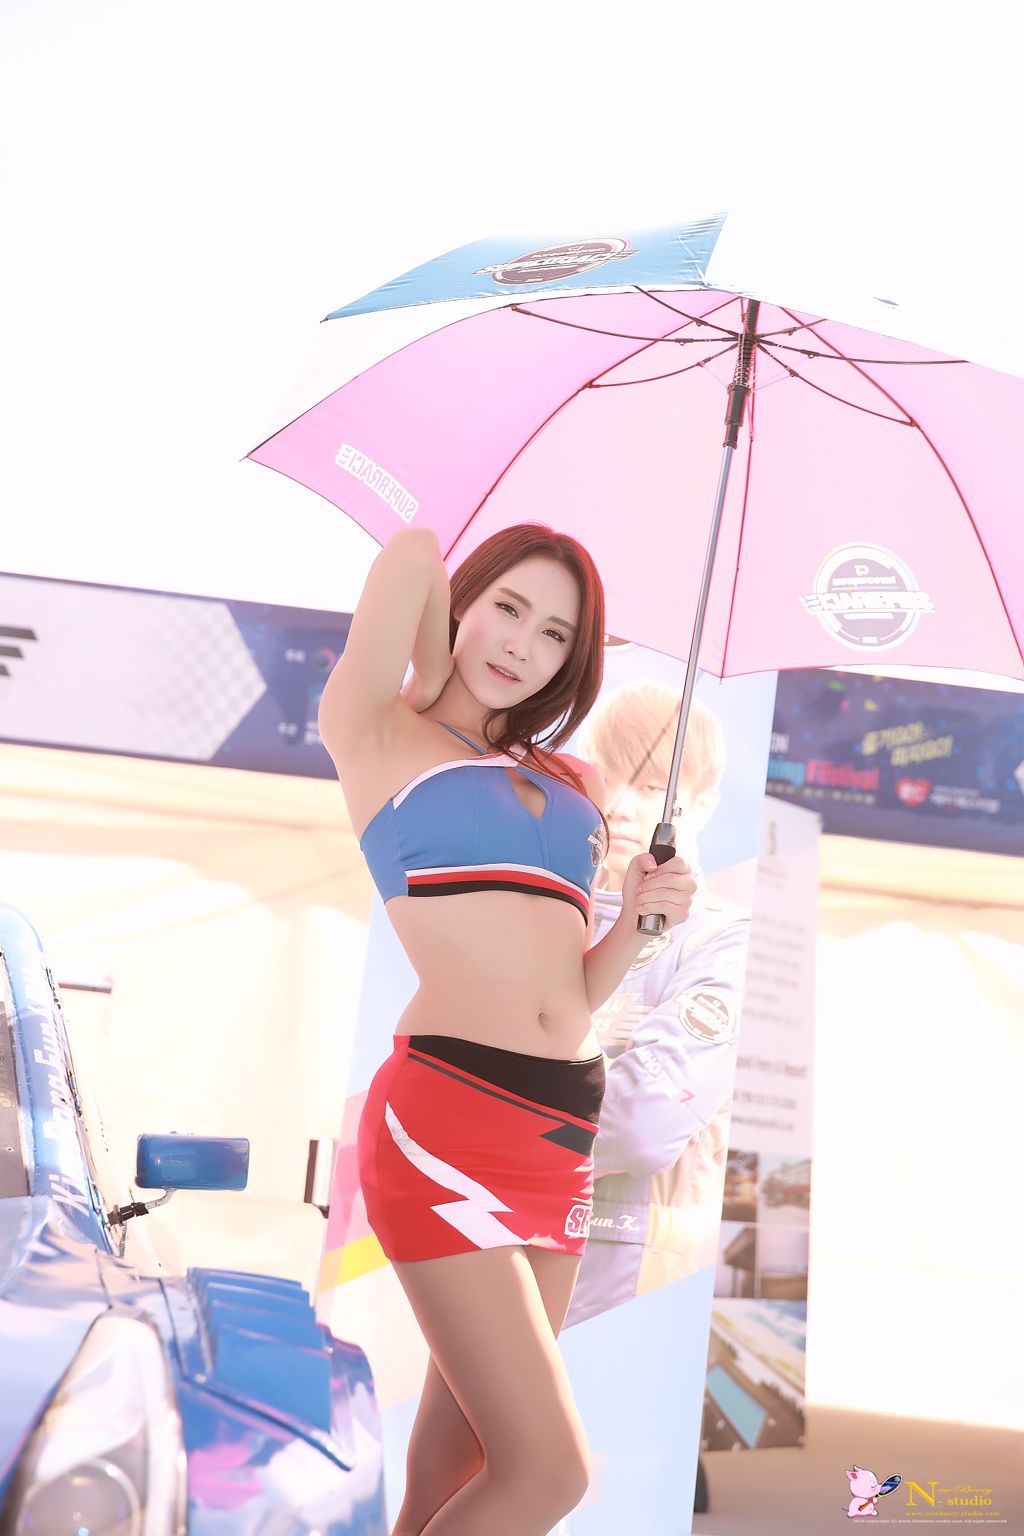 Image-Korean-Racing-Model-Lee-Soo-Yeon-Incheon-KoreaTuning-Festival-Show-TruePic.net- Picture-58